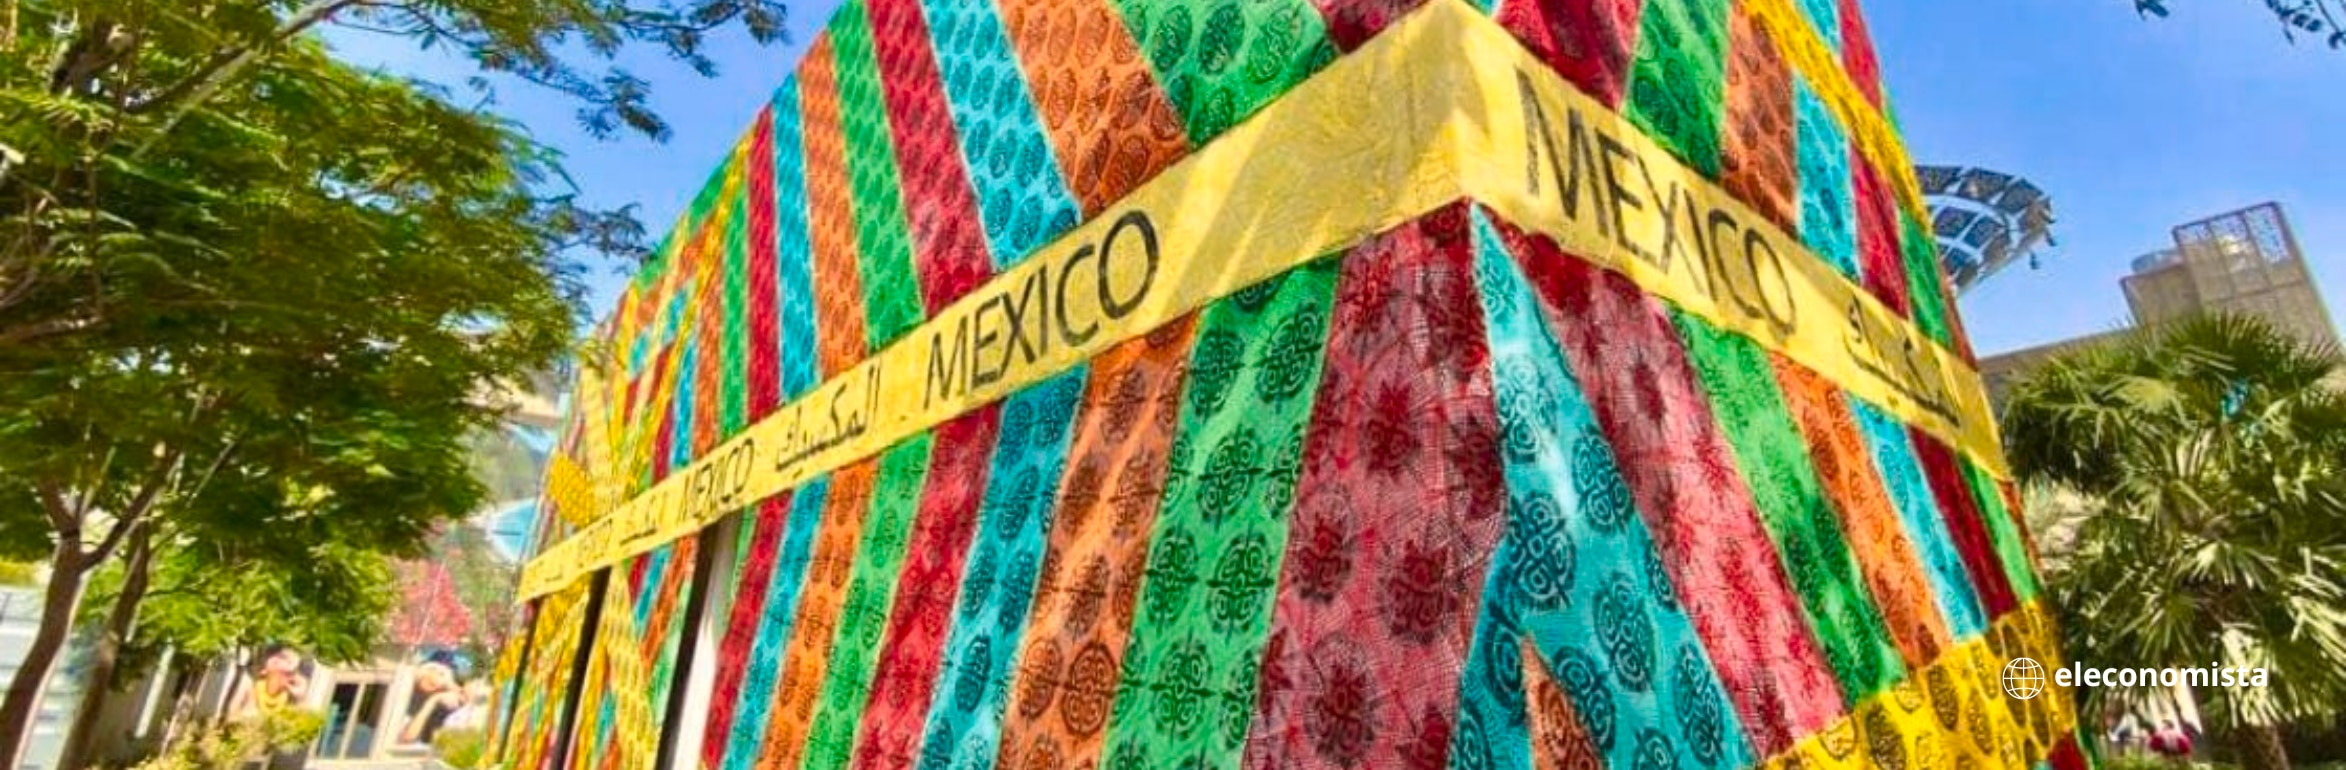 Mexico expo dubai